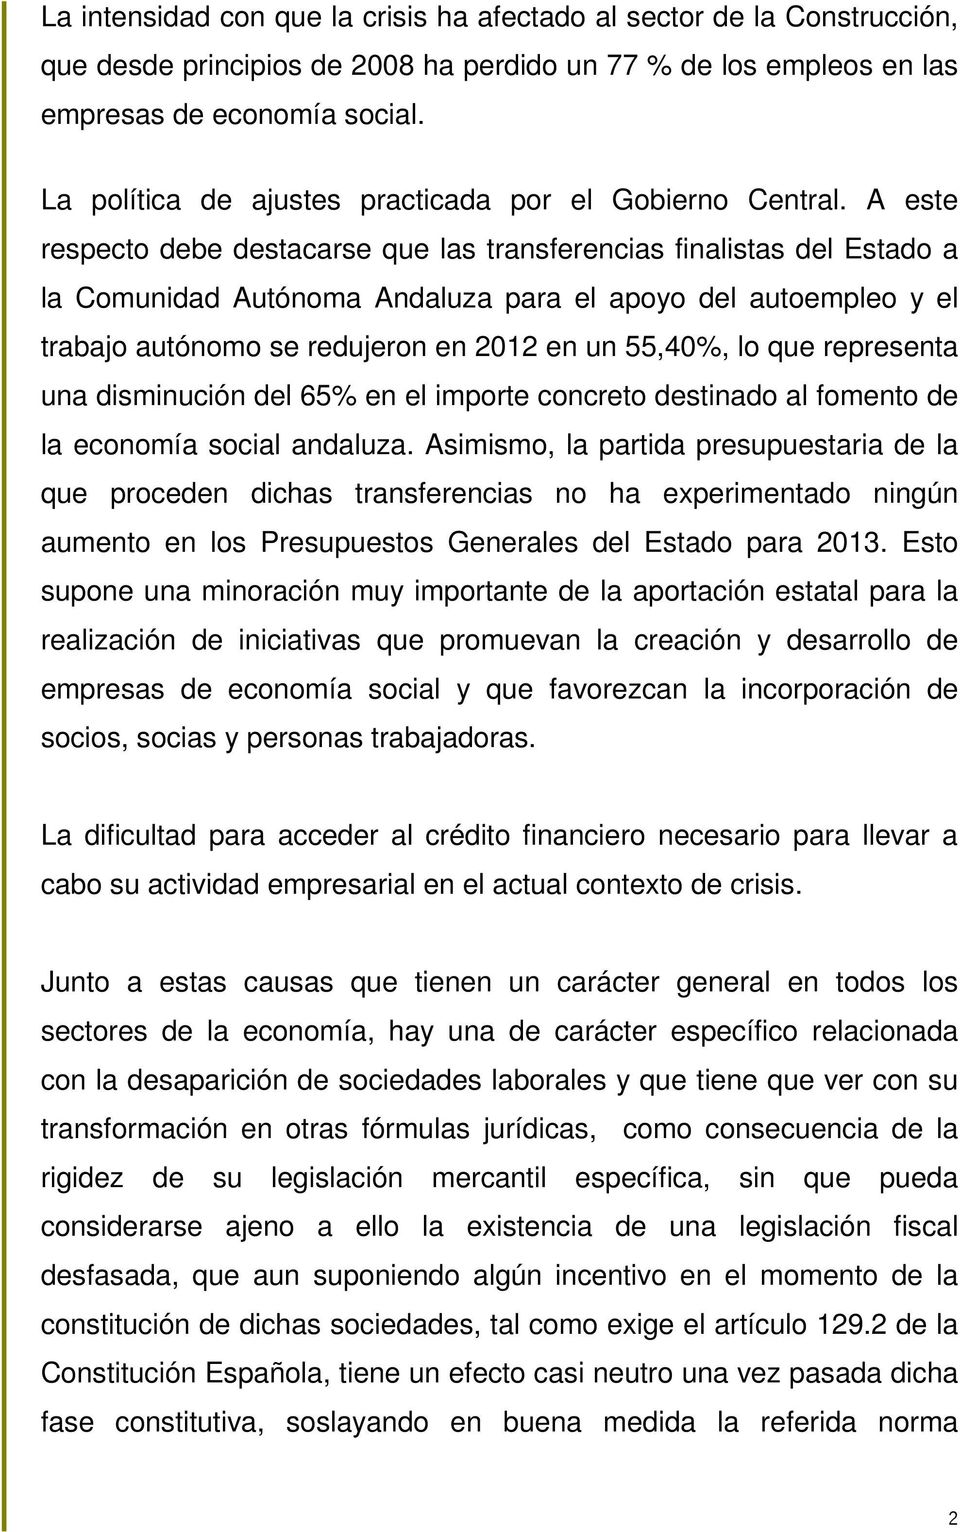 A este respecto debe destacarse que las transferencias finalistas del Estado a la Comunidad Autónoma Andaluza para el apoyo del autoempleo y el trabajo autónomo se redujeron en 2012 en un 55,40%, lo